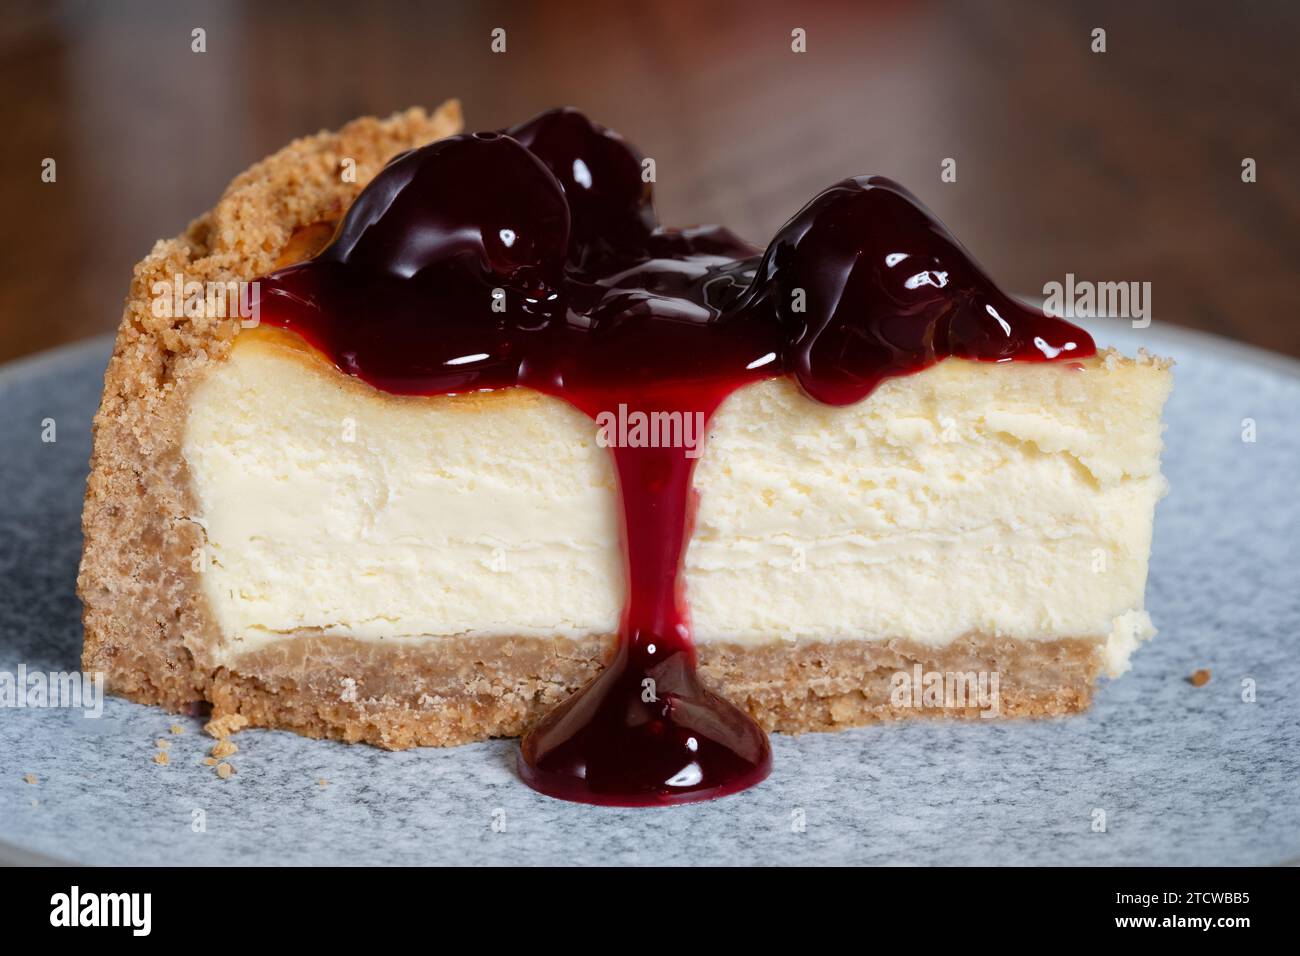 Eine in Scheiben geschnittene Portion eines tiefgefüllten New Yorker Käsekuchens mit schwarzen Kirschen. Der Kuchen wird auf Teller serviert. Stockfoto